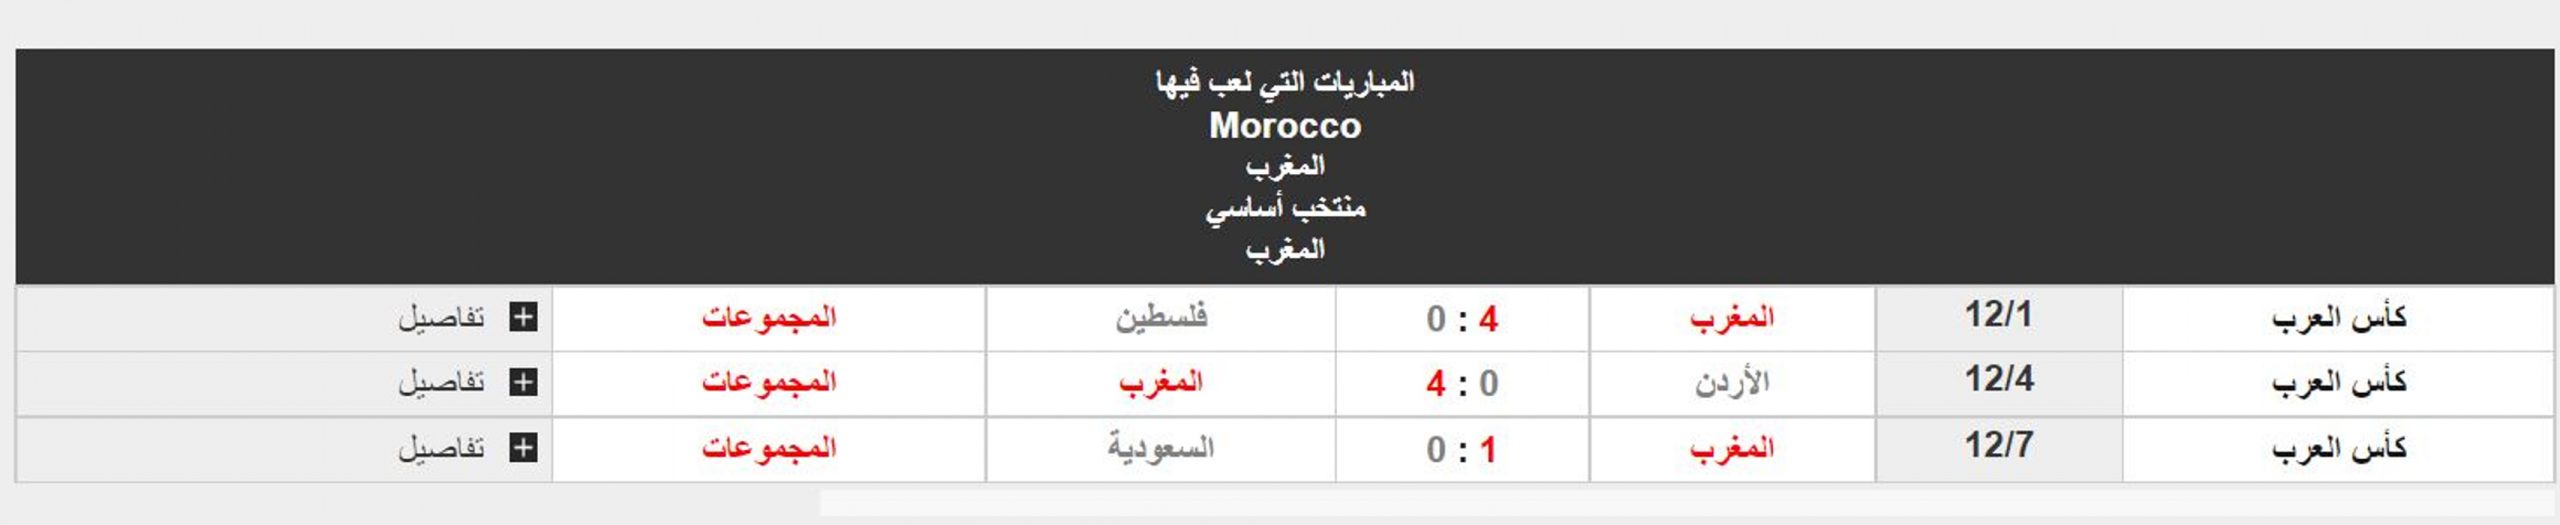 مباراة المغرب والجزائر نتائج منتخب المغرب في دور المجموعات بكأس العرب